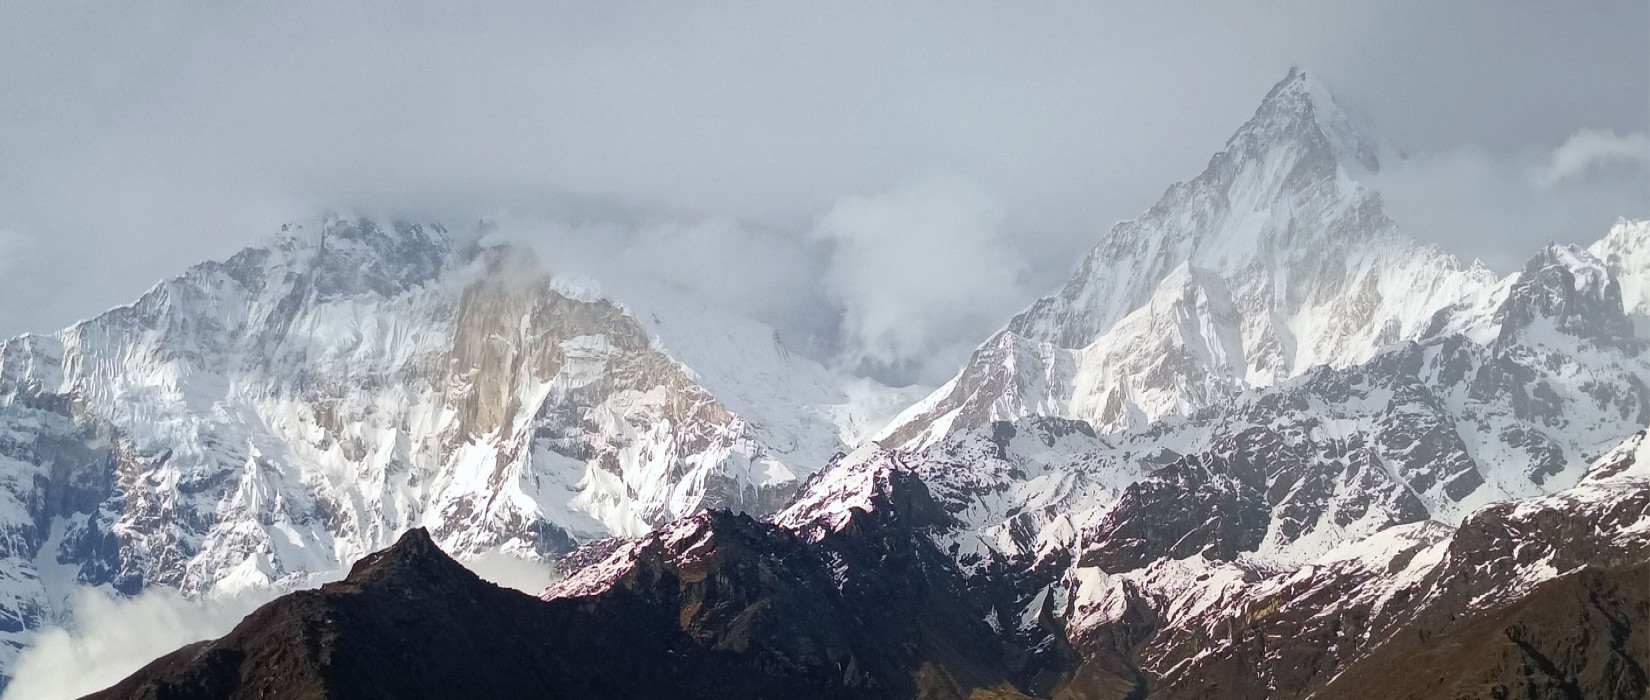 8 Days Kathmandu Valley Tour with Mountain Flight